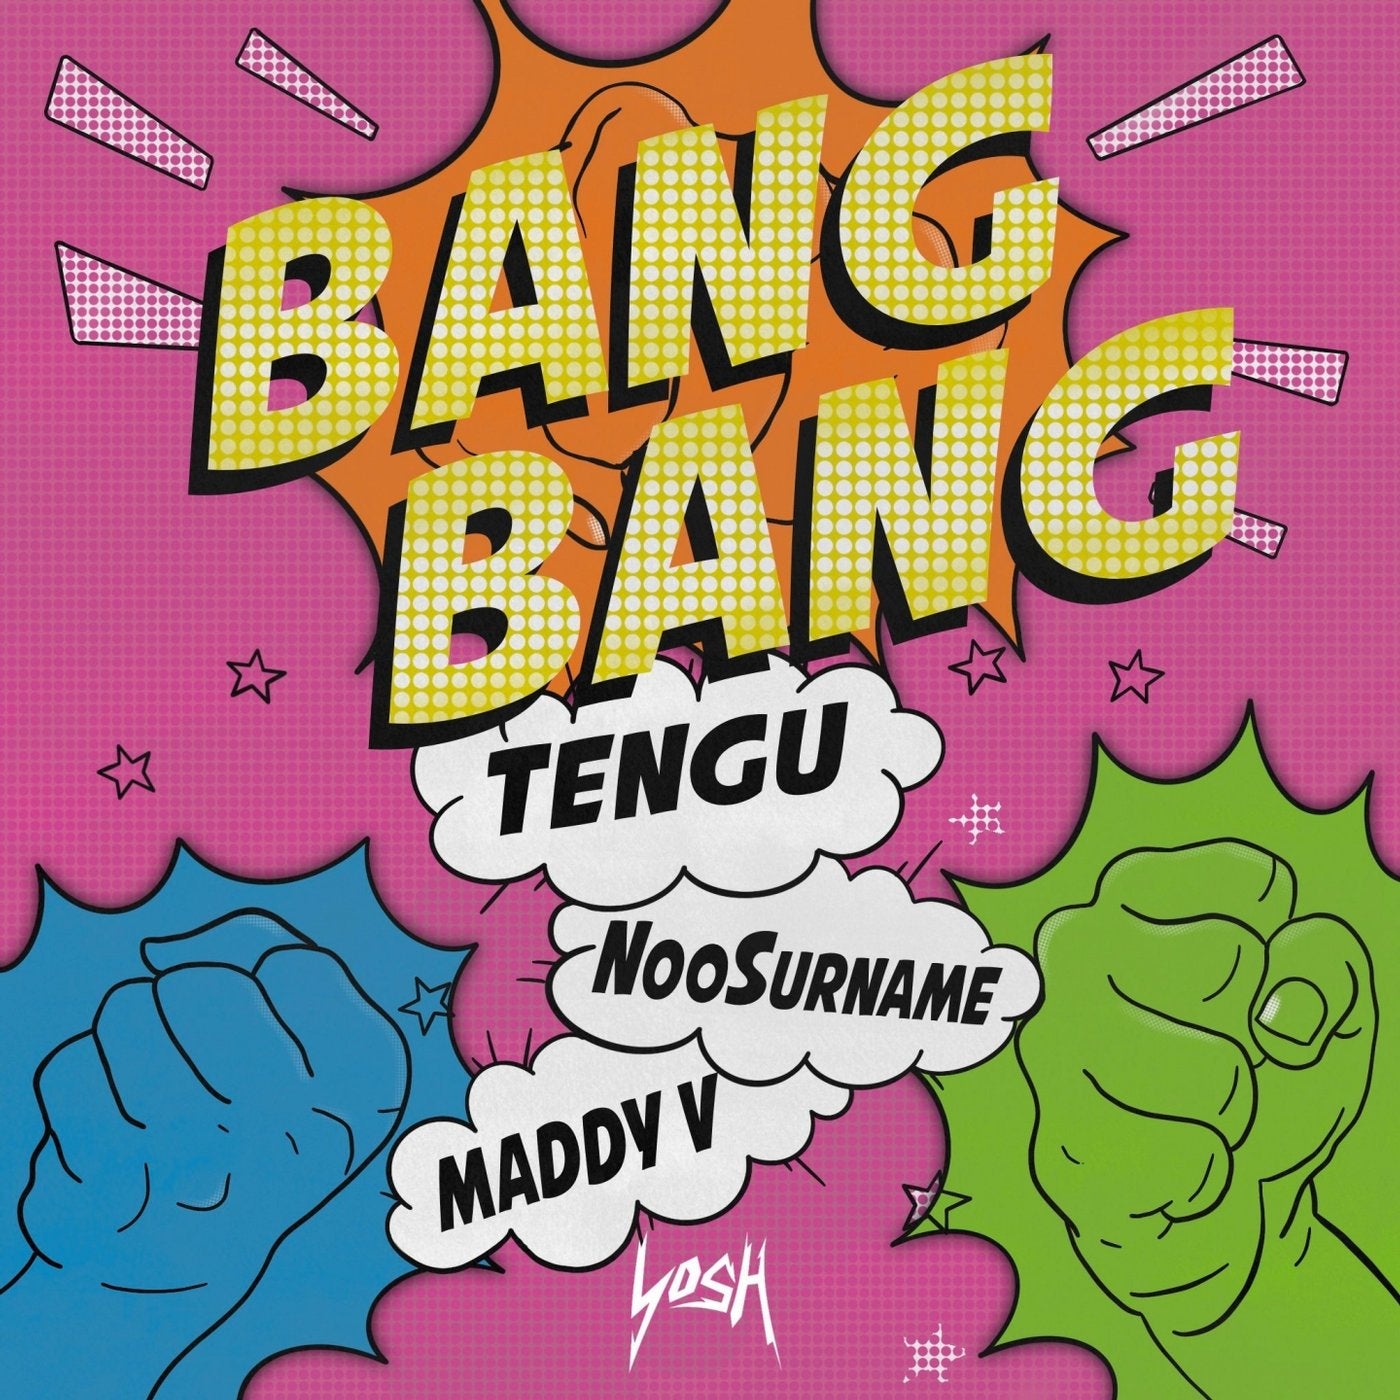 Bang bang bang slowed. Ban ban. Bang! Альбомы. Bang Bang текст. V Bangs.